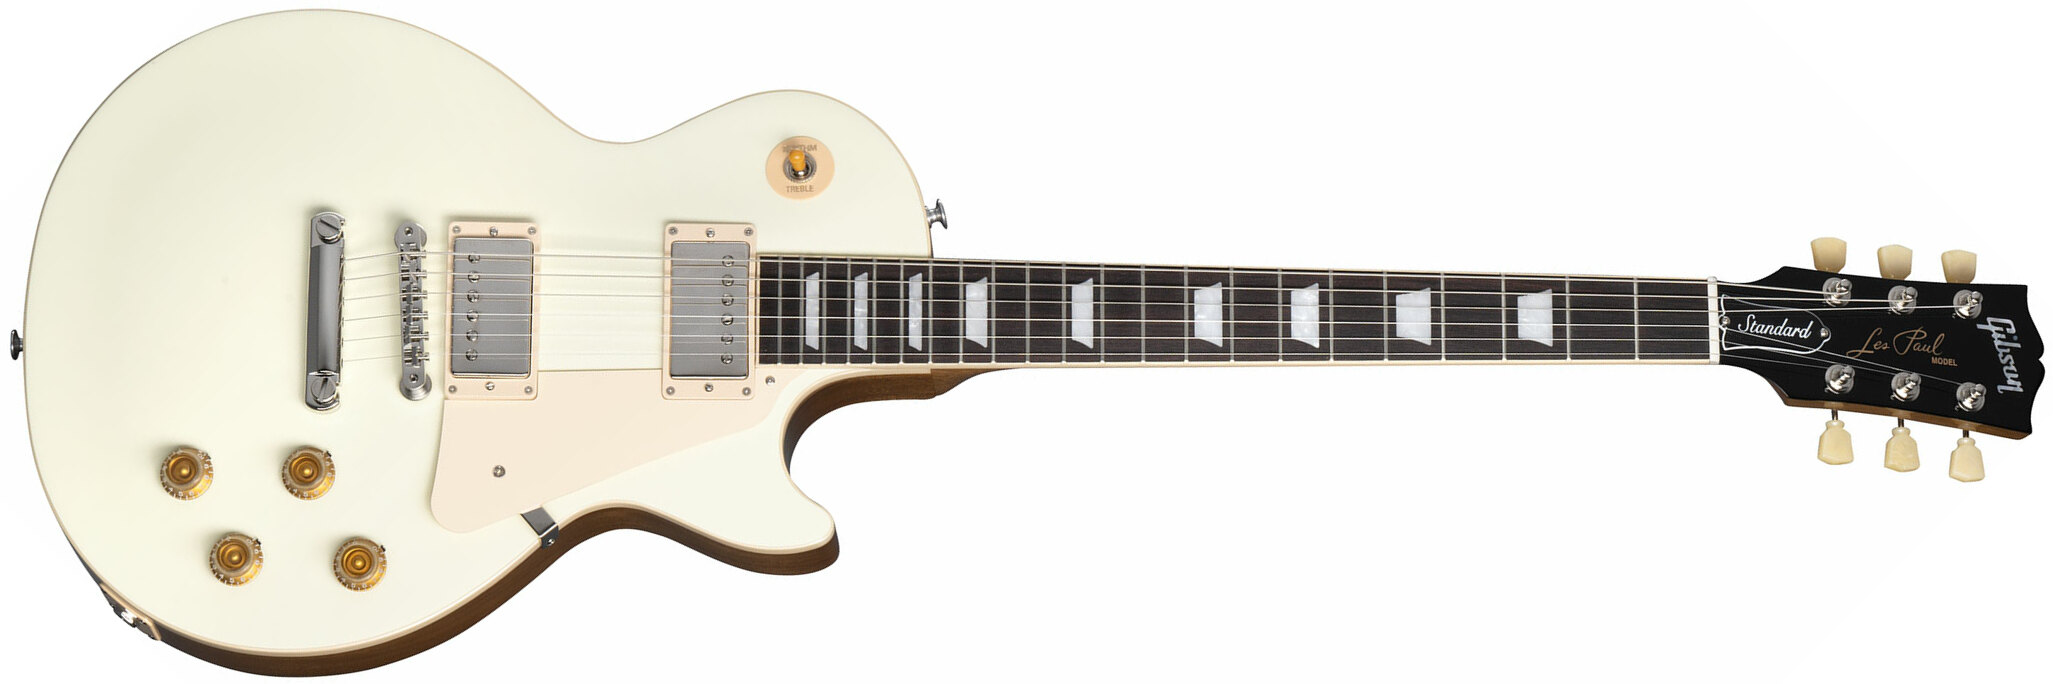 Gibson Les Paul Standard 50s Plain Top 2h Ht Rw - Classic White - Guitarra eléctrica de corte único. - Main picture